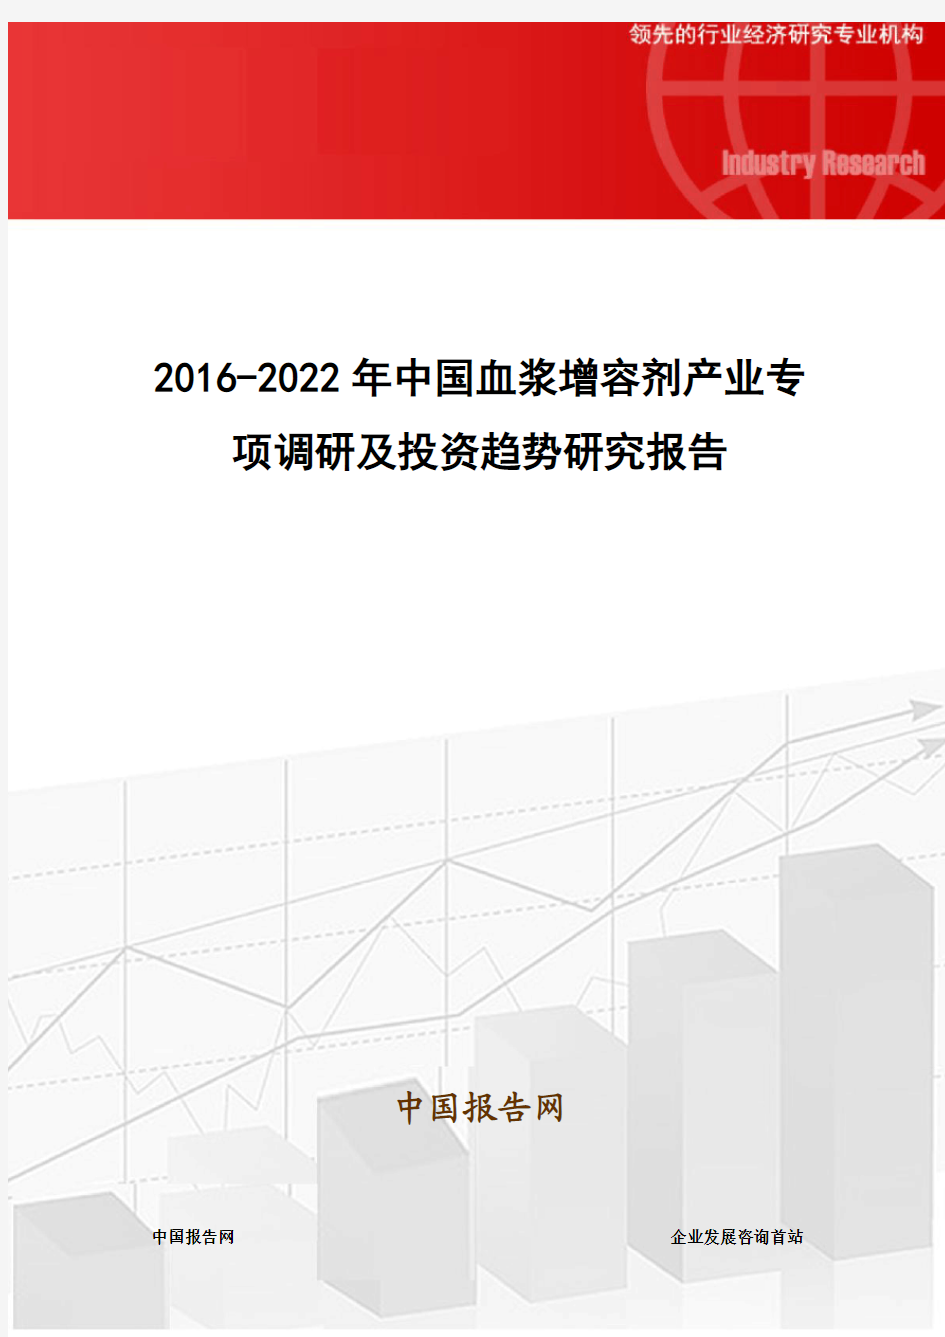 2016-2022年中国血浆增容剂产业专项调研及投资趋势研究报告